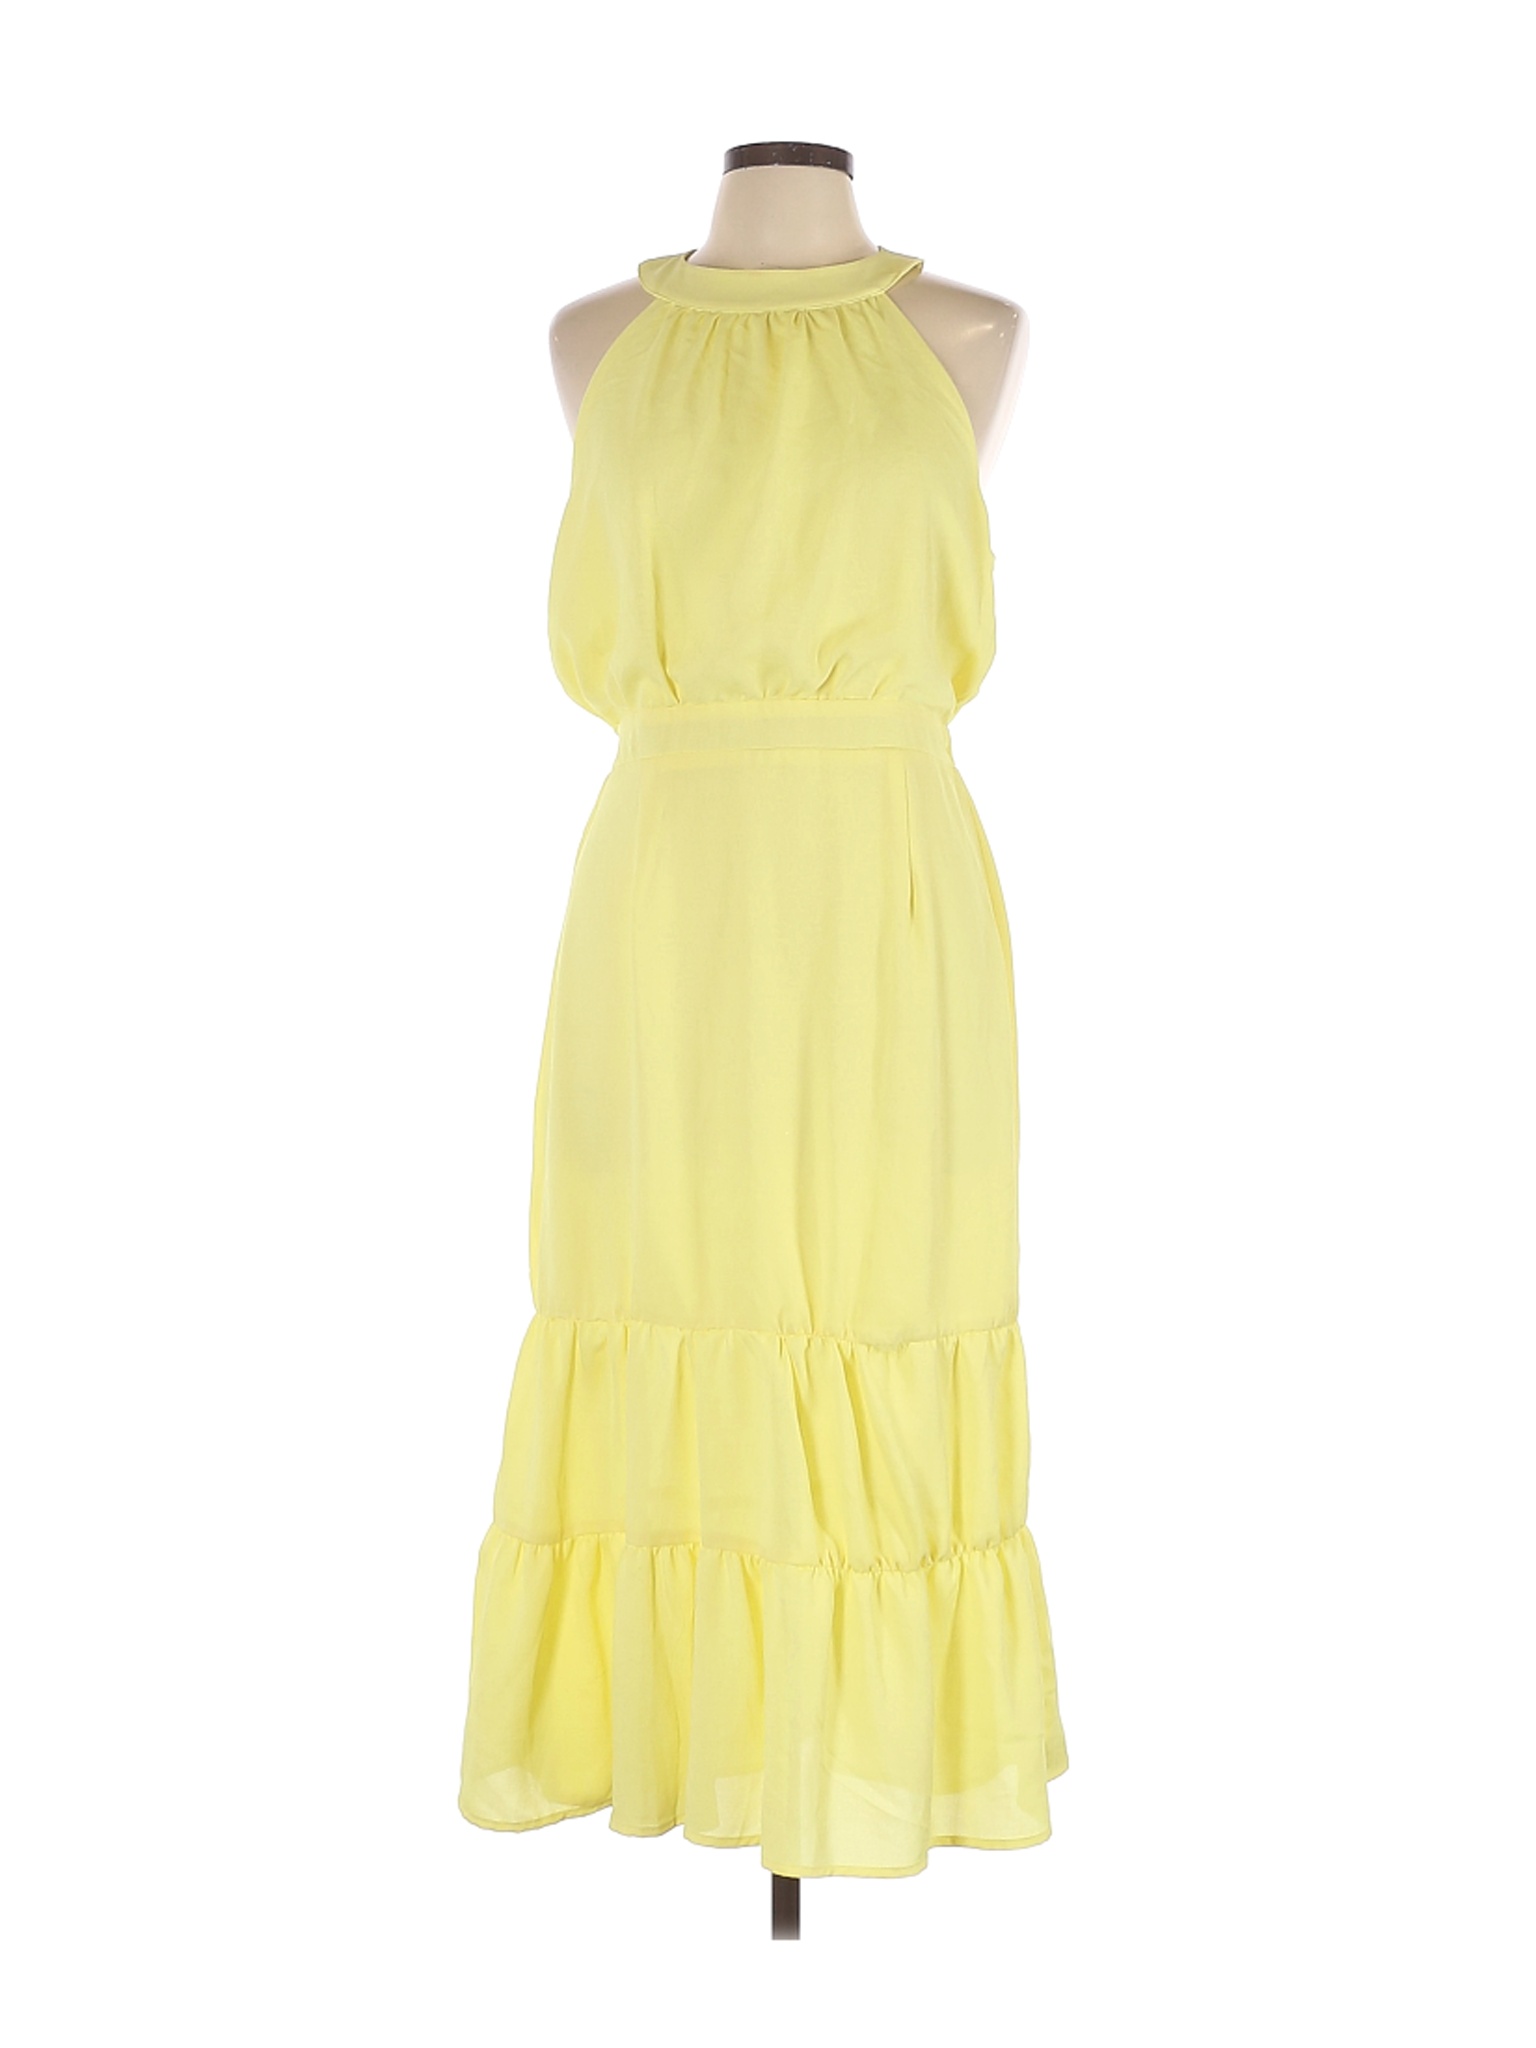 Nsr Women Yellow Cocktail Dress L Ebay